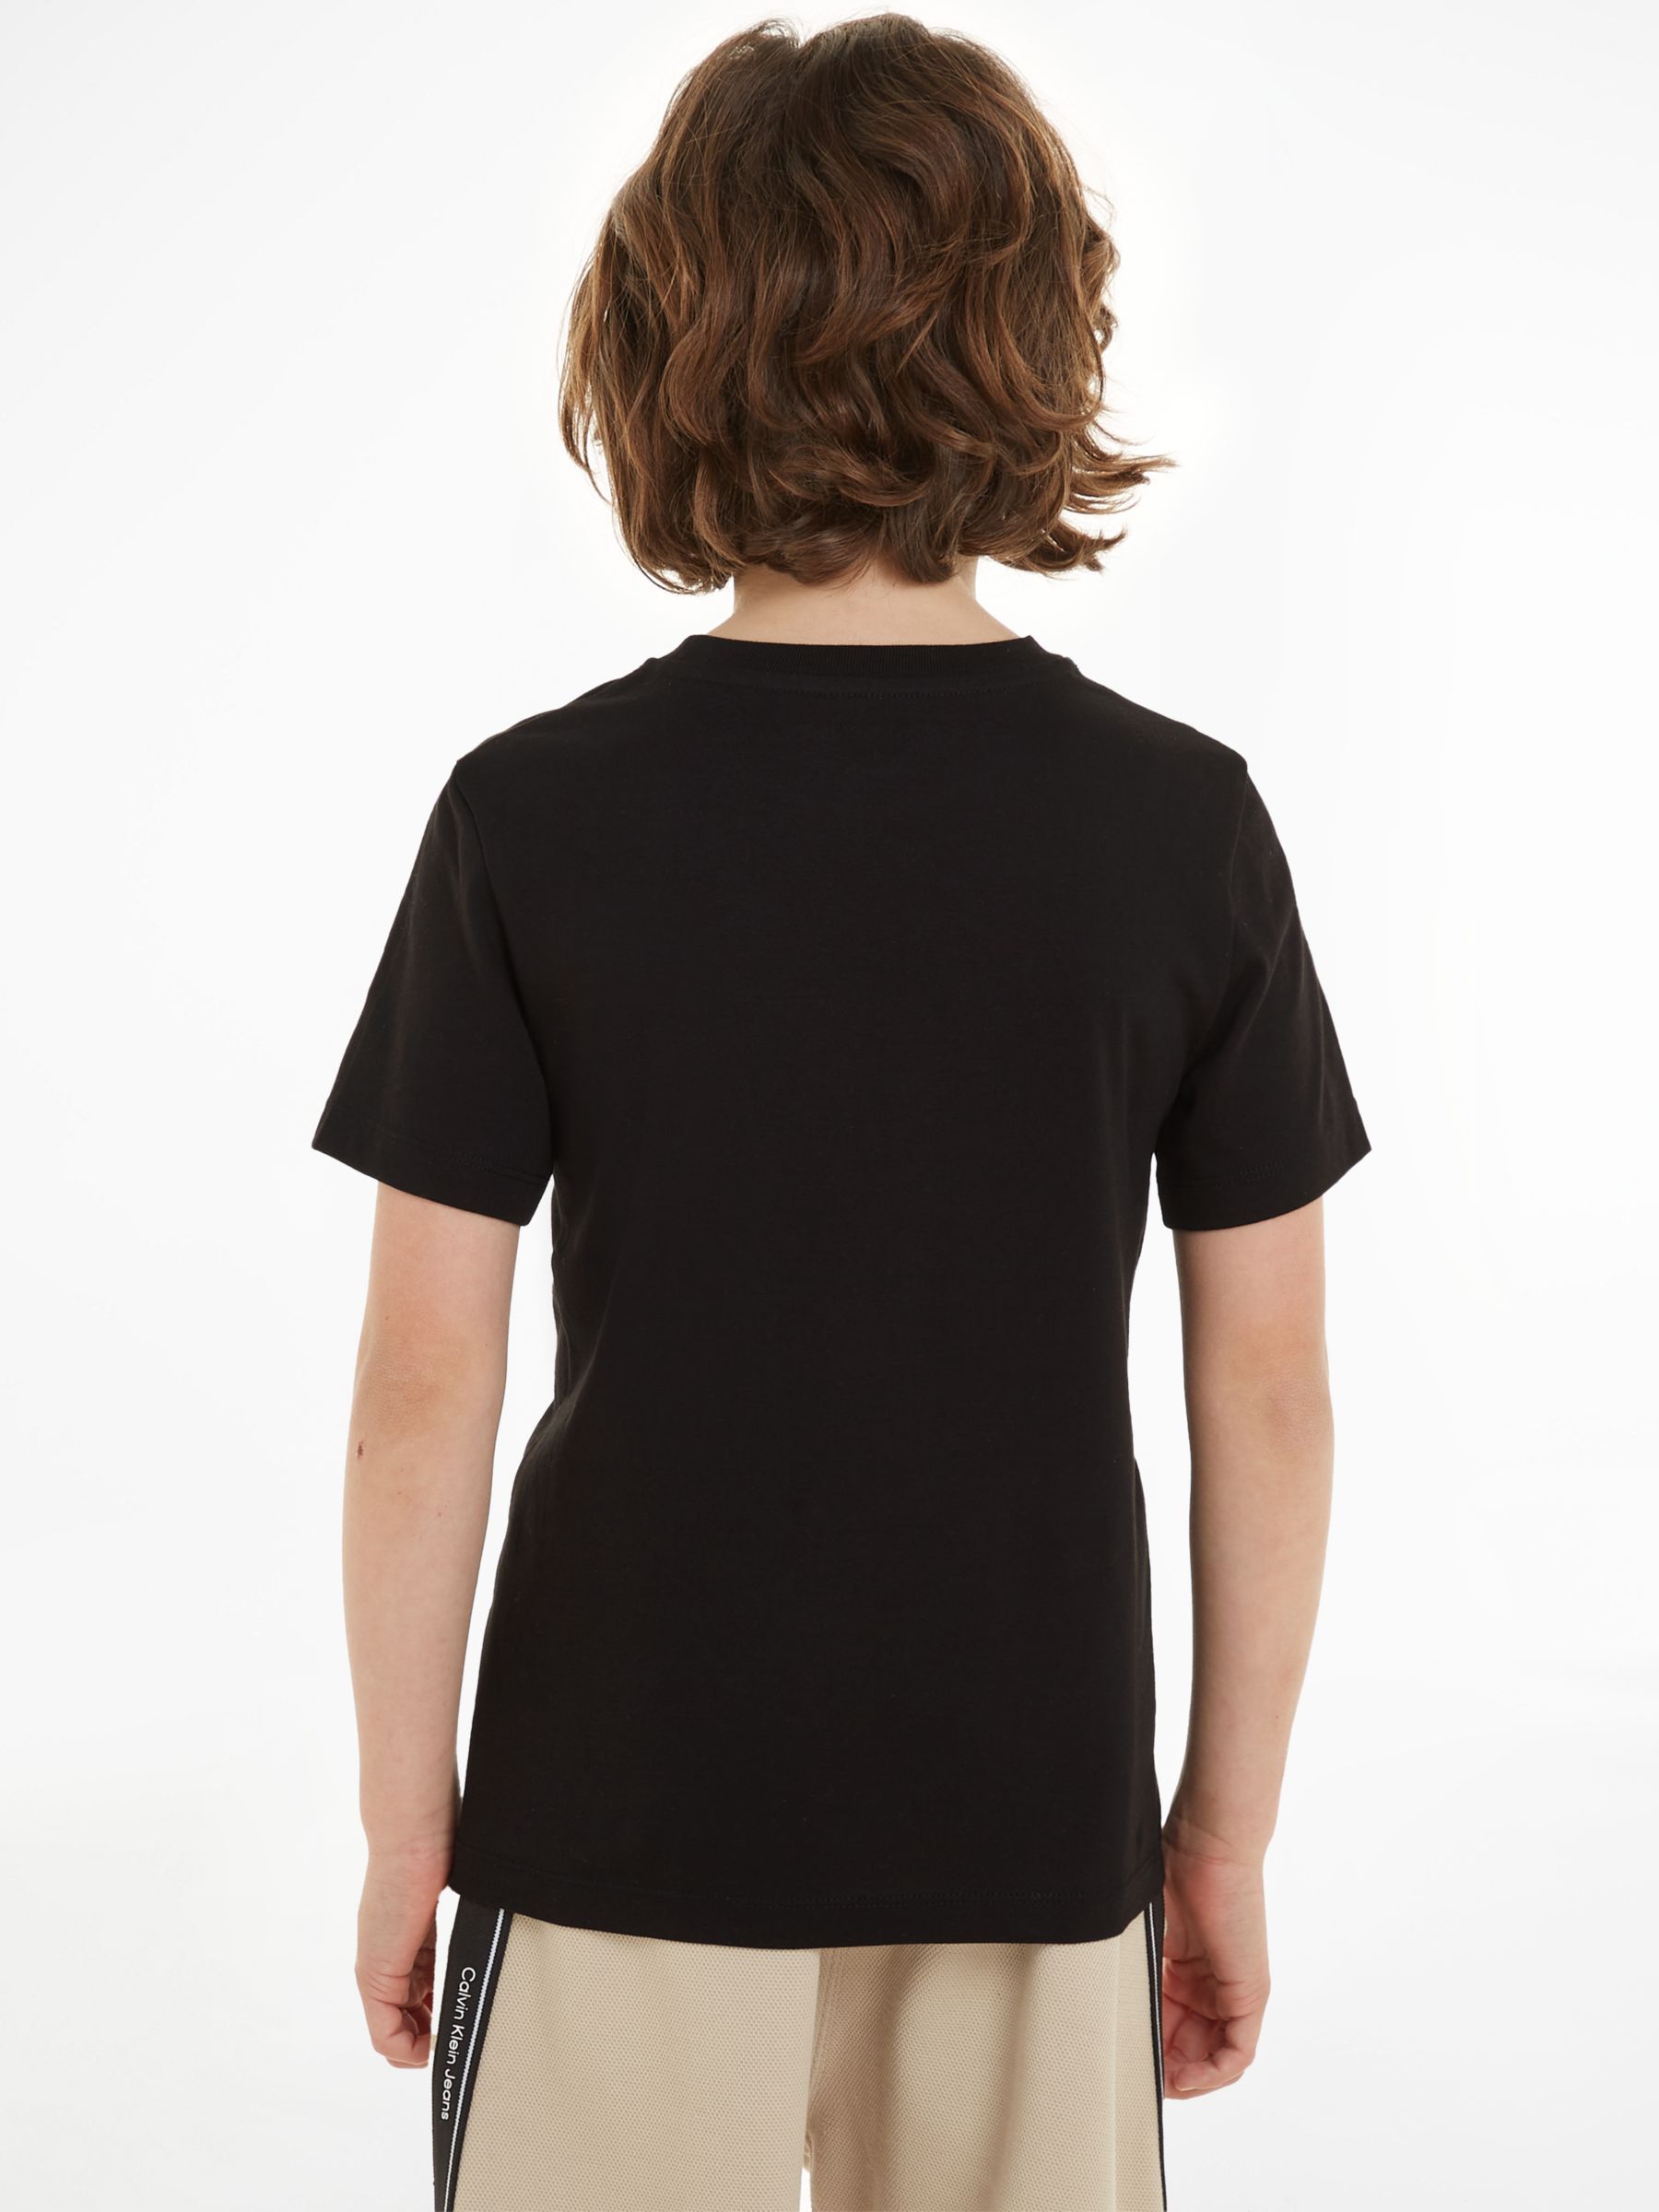 Partners Cotton T-Shirts, Keepsake Kids\' Klein Sleeve Pack Lewis & at Short 2, John Calvin Blue/Ck Monogram of Black